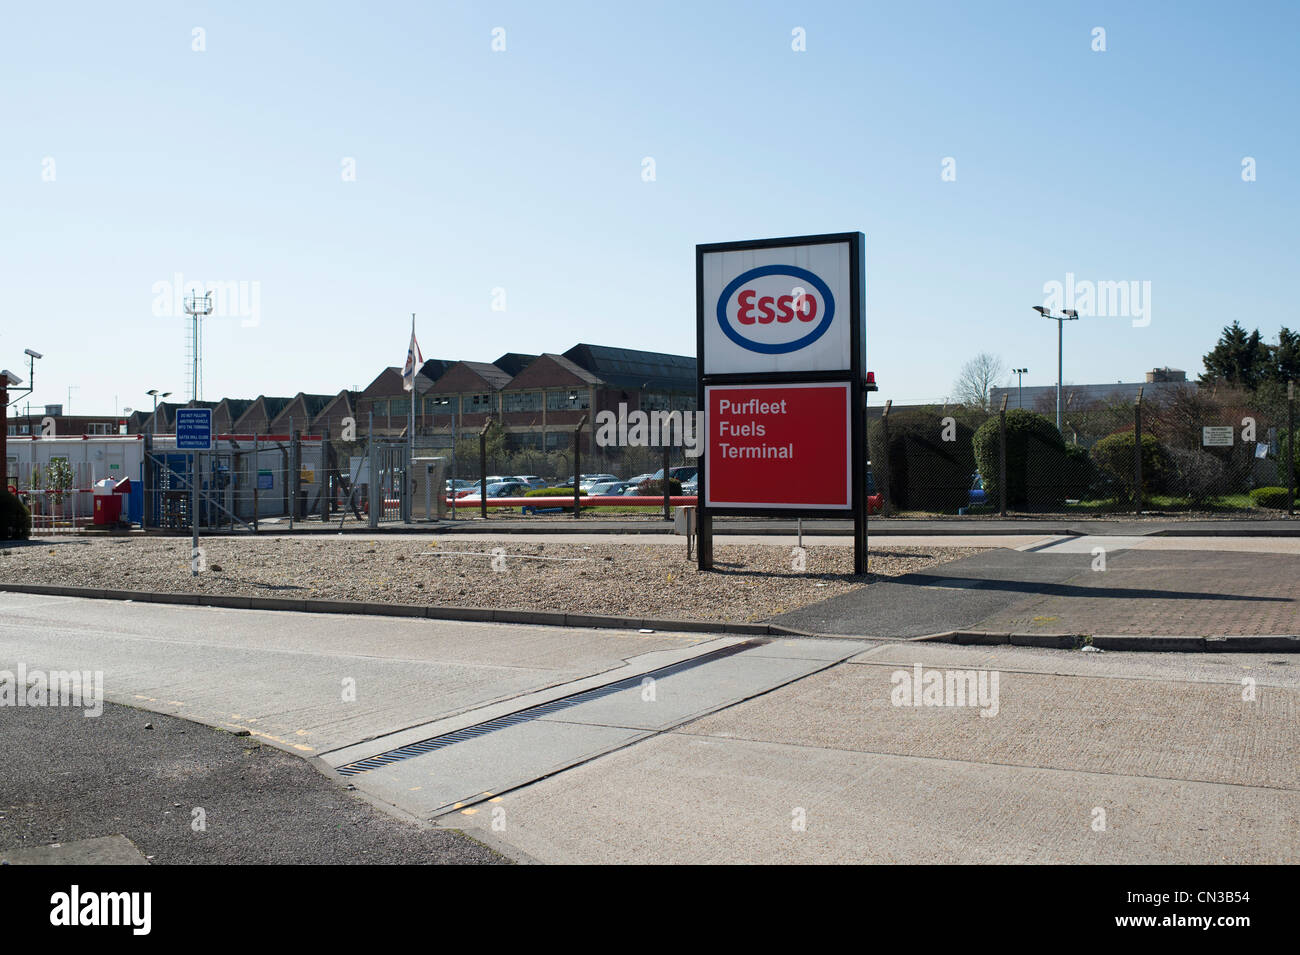 L'entrée du dépôt pétrolier Esso dans London Road, Purfleet, Essex. Ce site faisait partie de l'essence 2000 différend. Banque D'Images